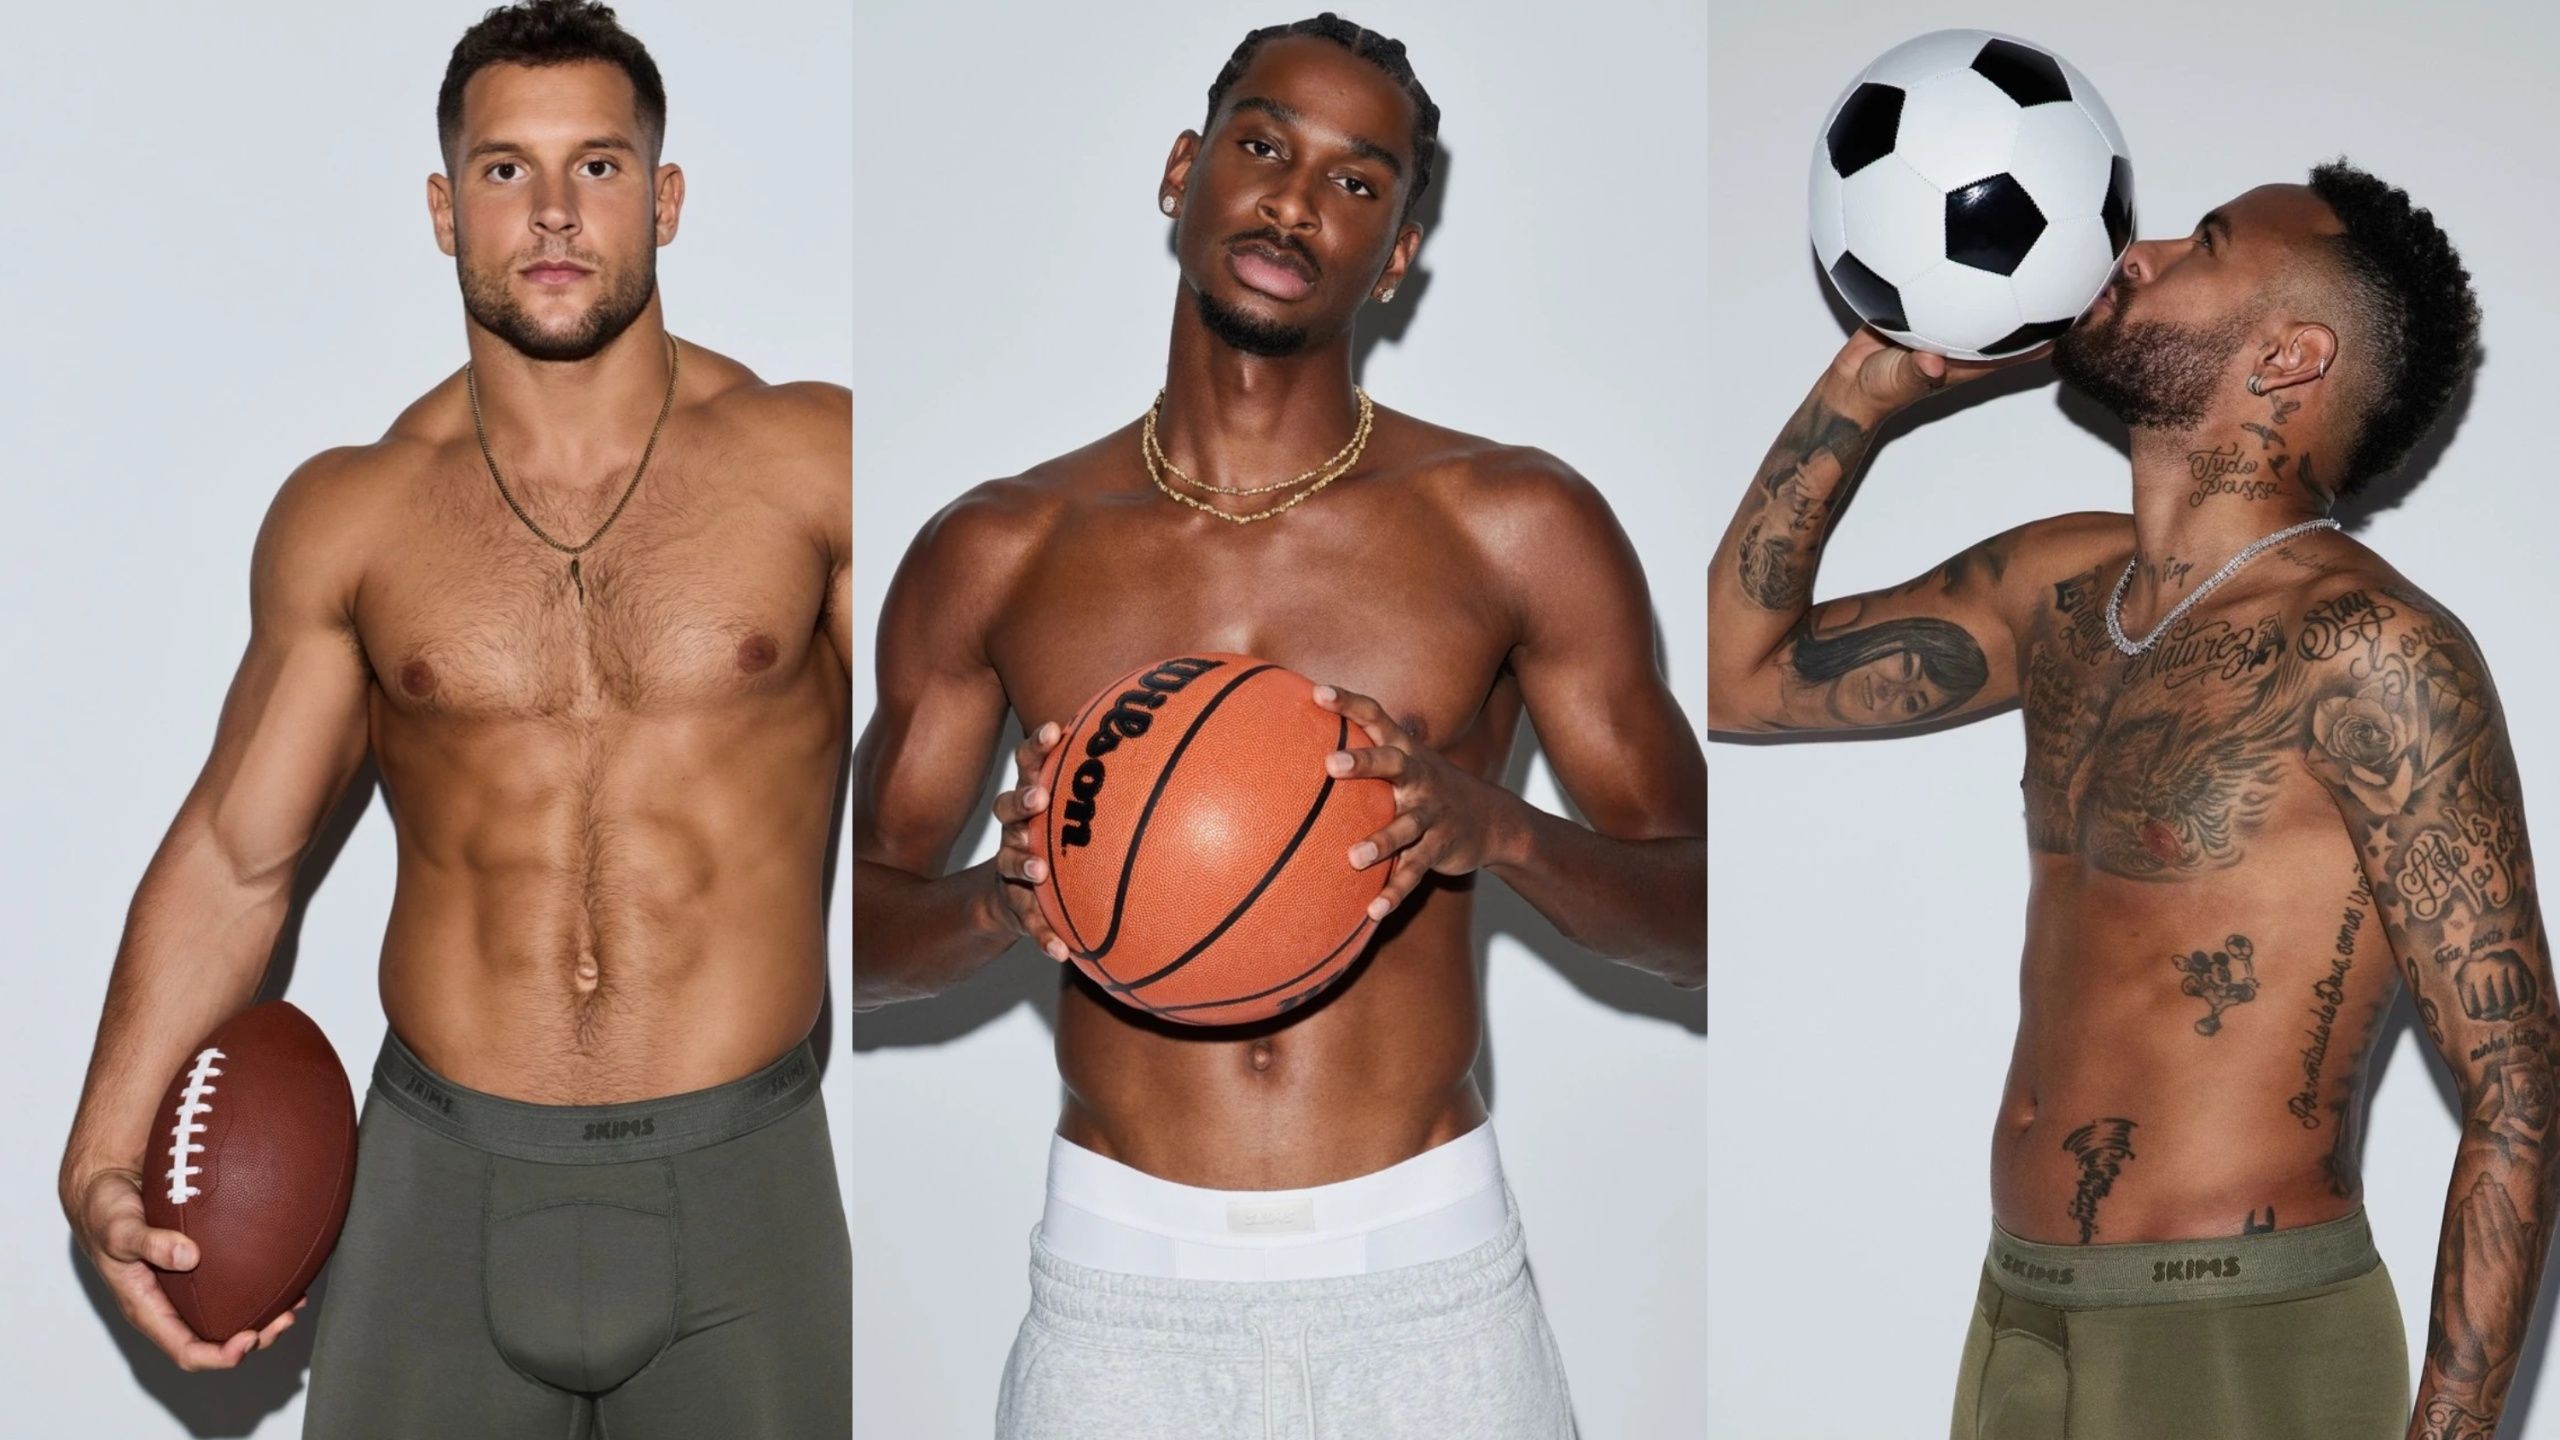 SKIMS By Kim Kardashian Launches Menswear Line With Neymar Jr